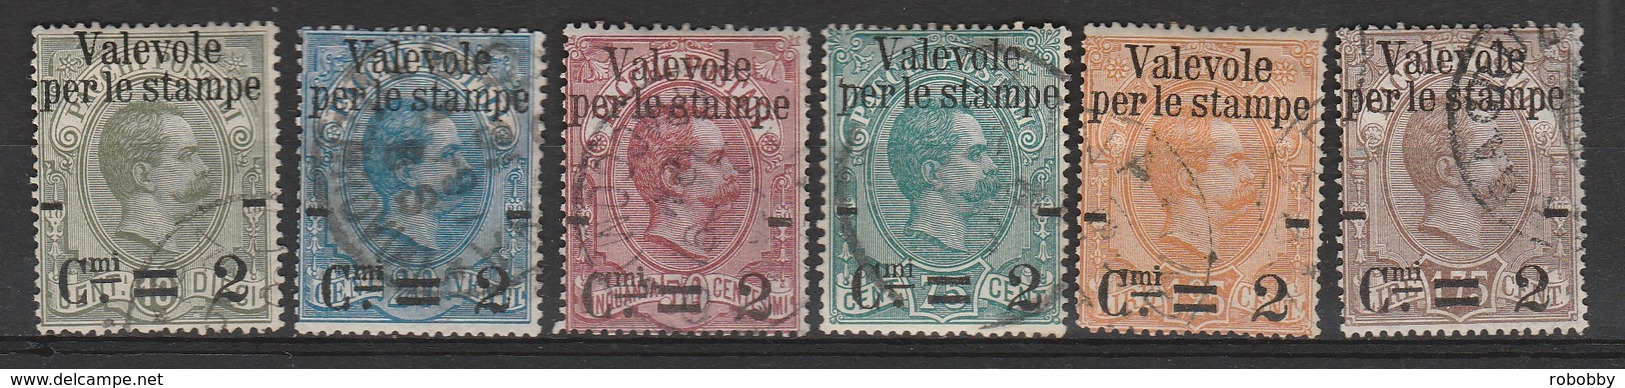 Italie  N° 46 à 51  (cote 120 Euros) - Colis-postaux